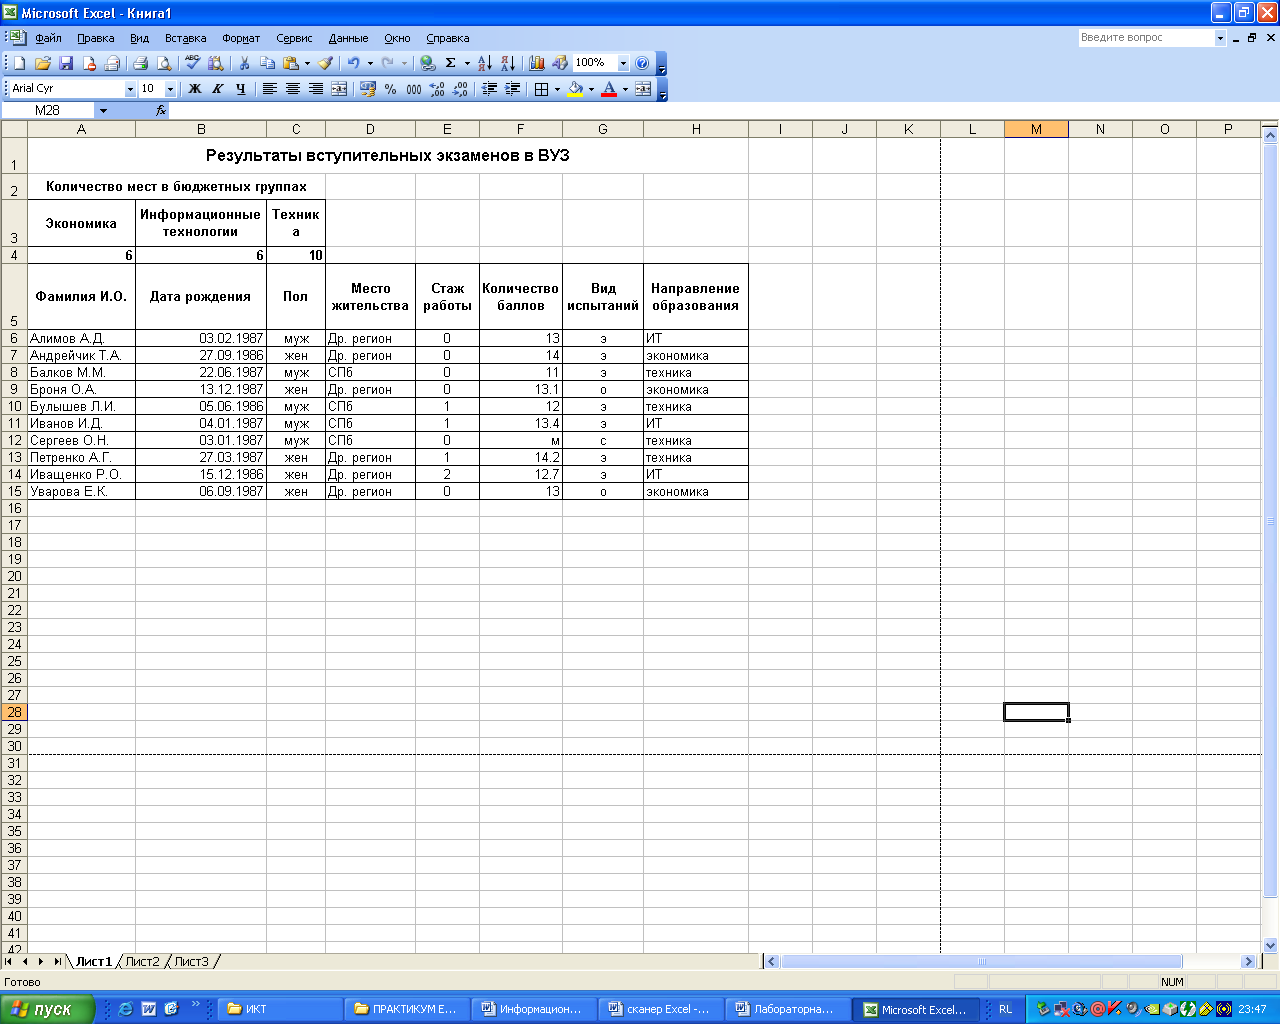 Раздаточный материал Информационная технология обработки данных в среде табличного процессора Excel